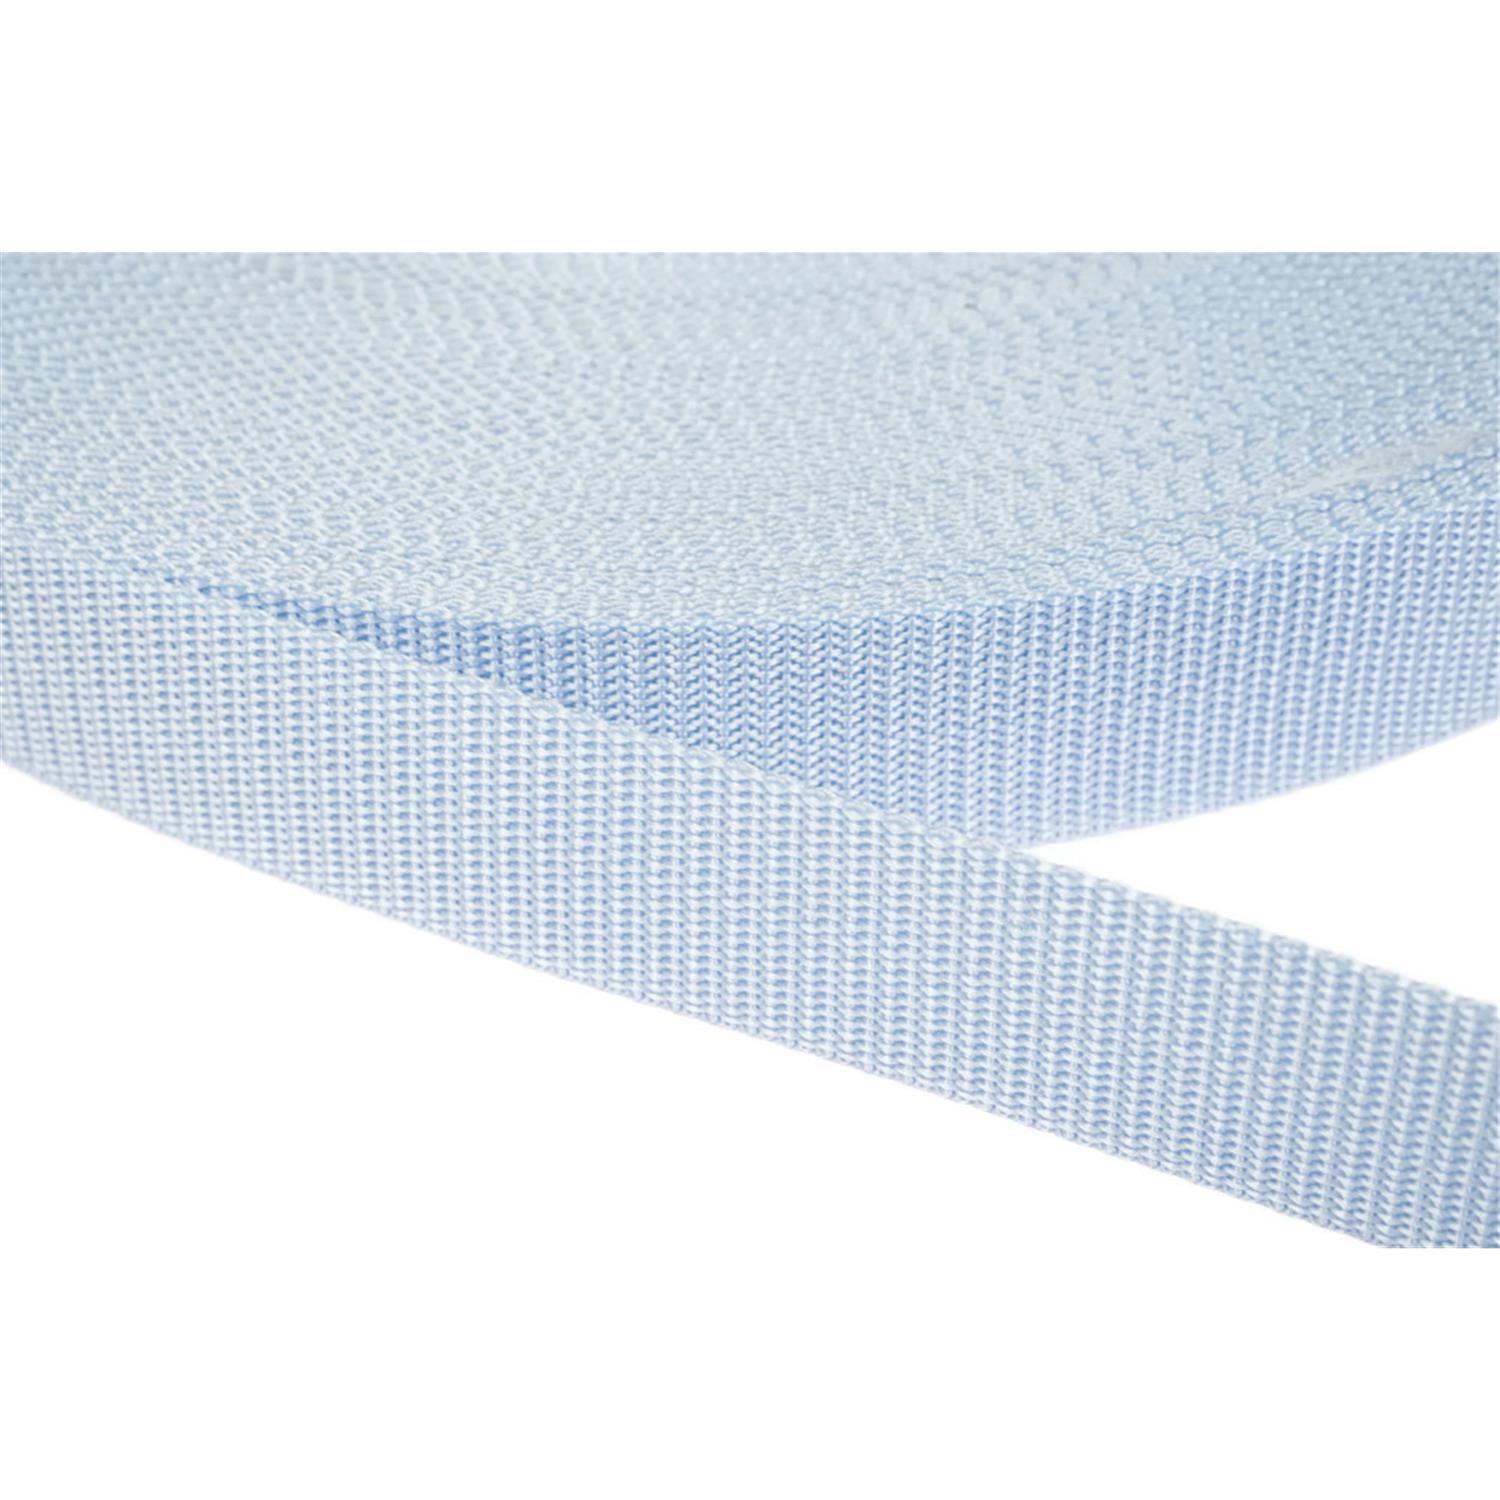 Gurtband 40mm breit aus Polypropylen in 41 Farben 25 - hellblau 6 Meter